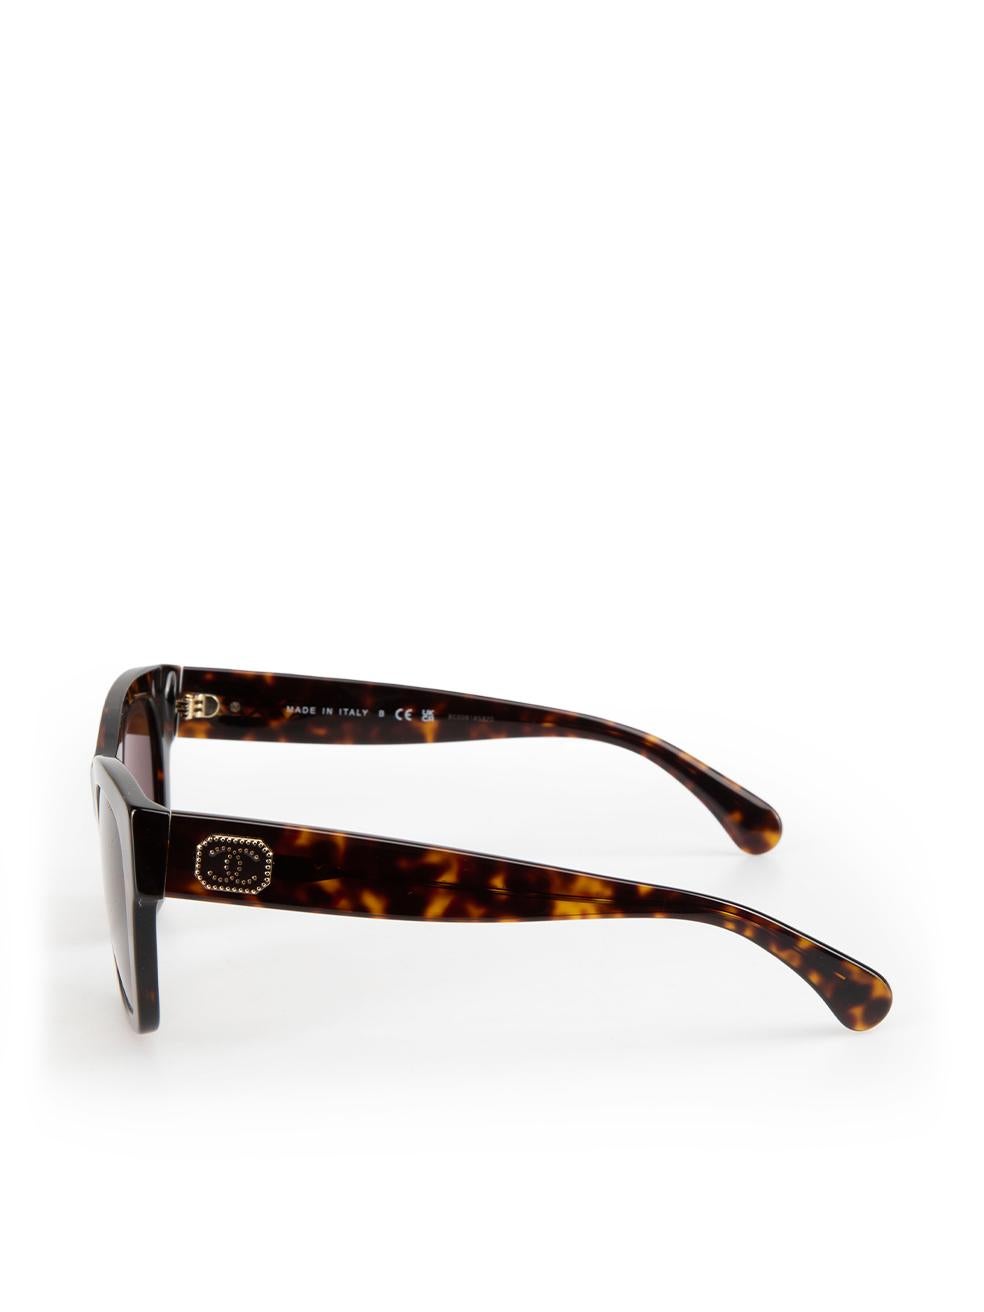 Chanel Dark Tortoise Square Sunglasses For Sale 1